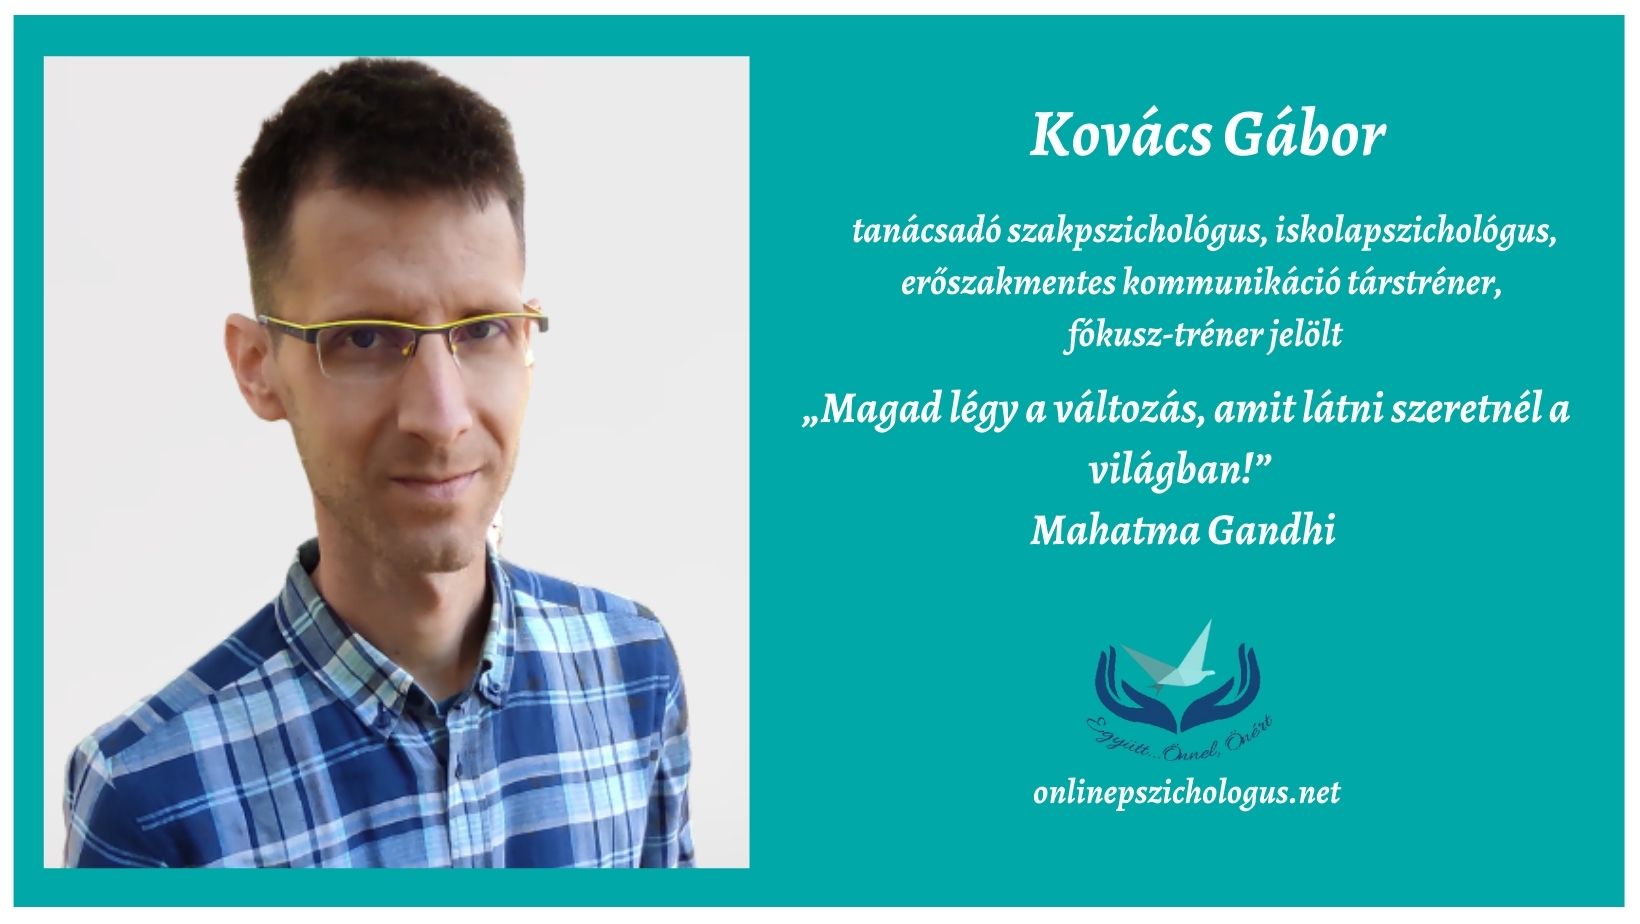 Interjú Kovács Gábor tanácsadó szakpszichológussal